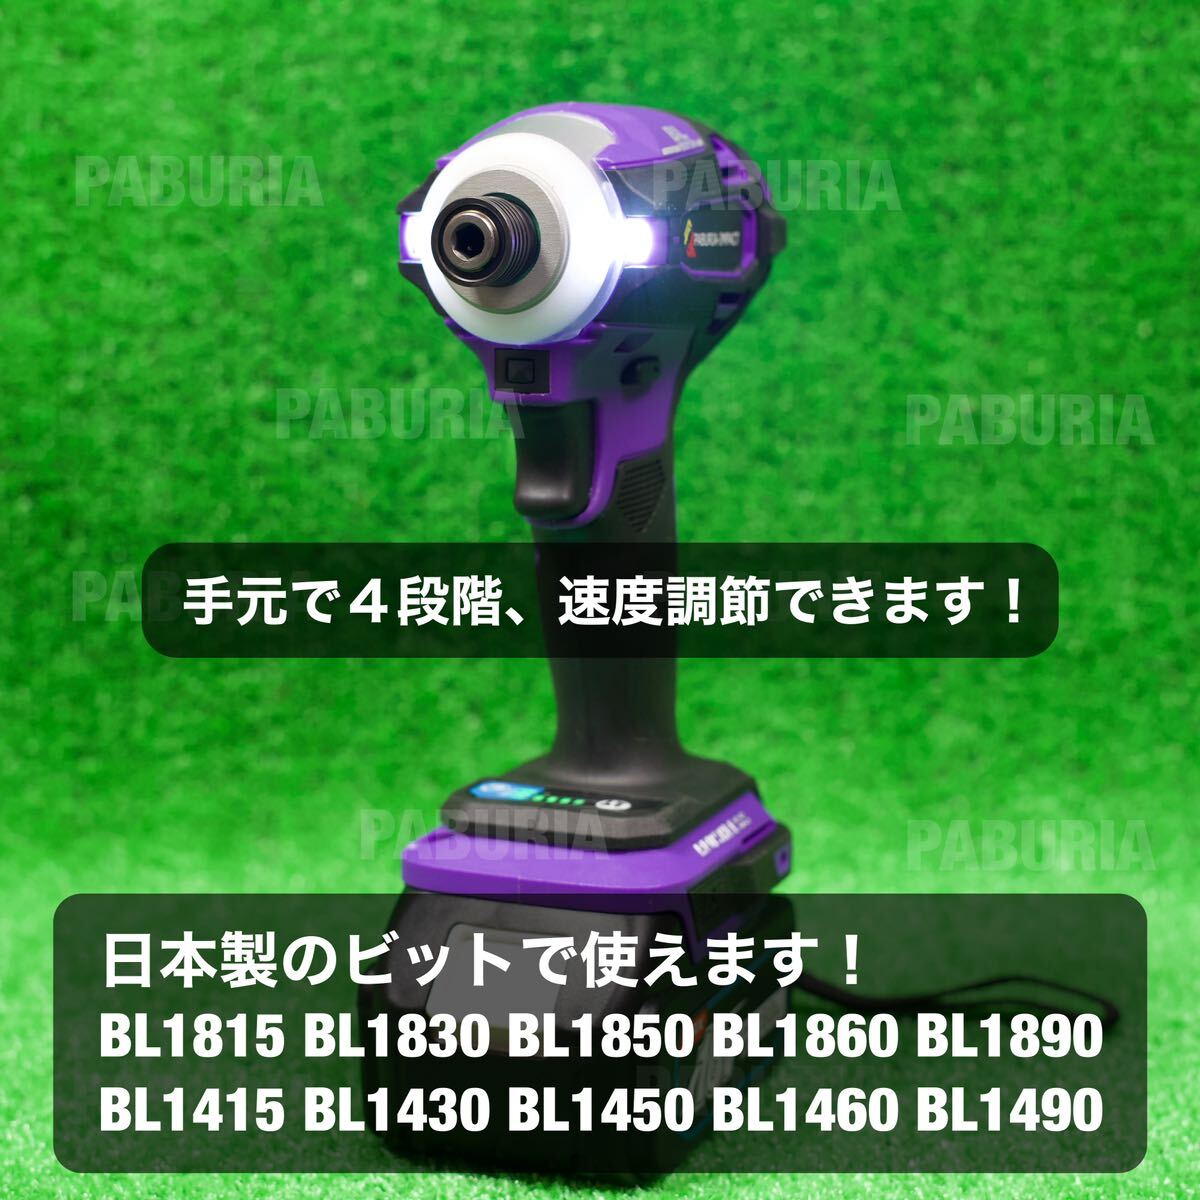 【新型BLモデル】フルセット PABURIAマキタ 「紫」互換 ハイパワーインパクトドライバー、18v6.0Ahバッテリー、充電器セット、ケースセットの画像5